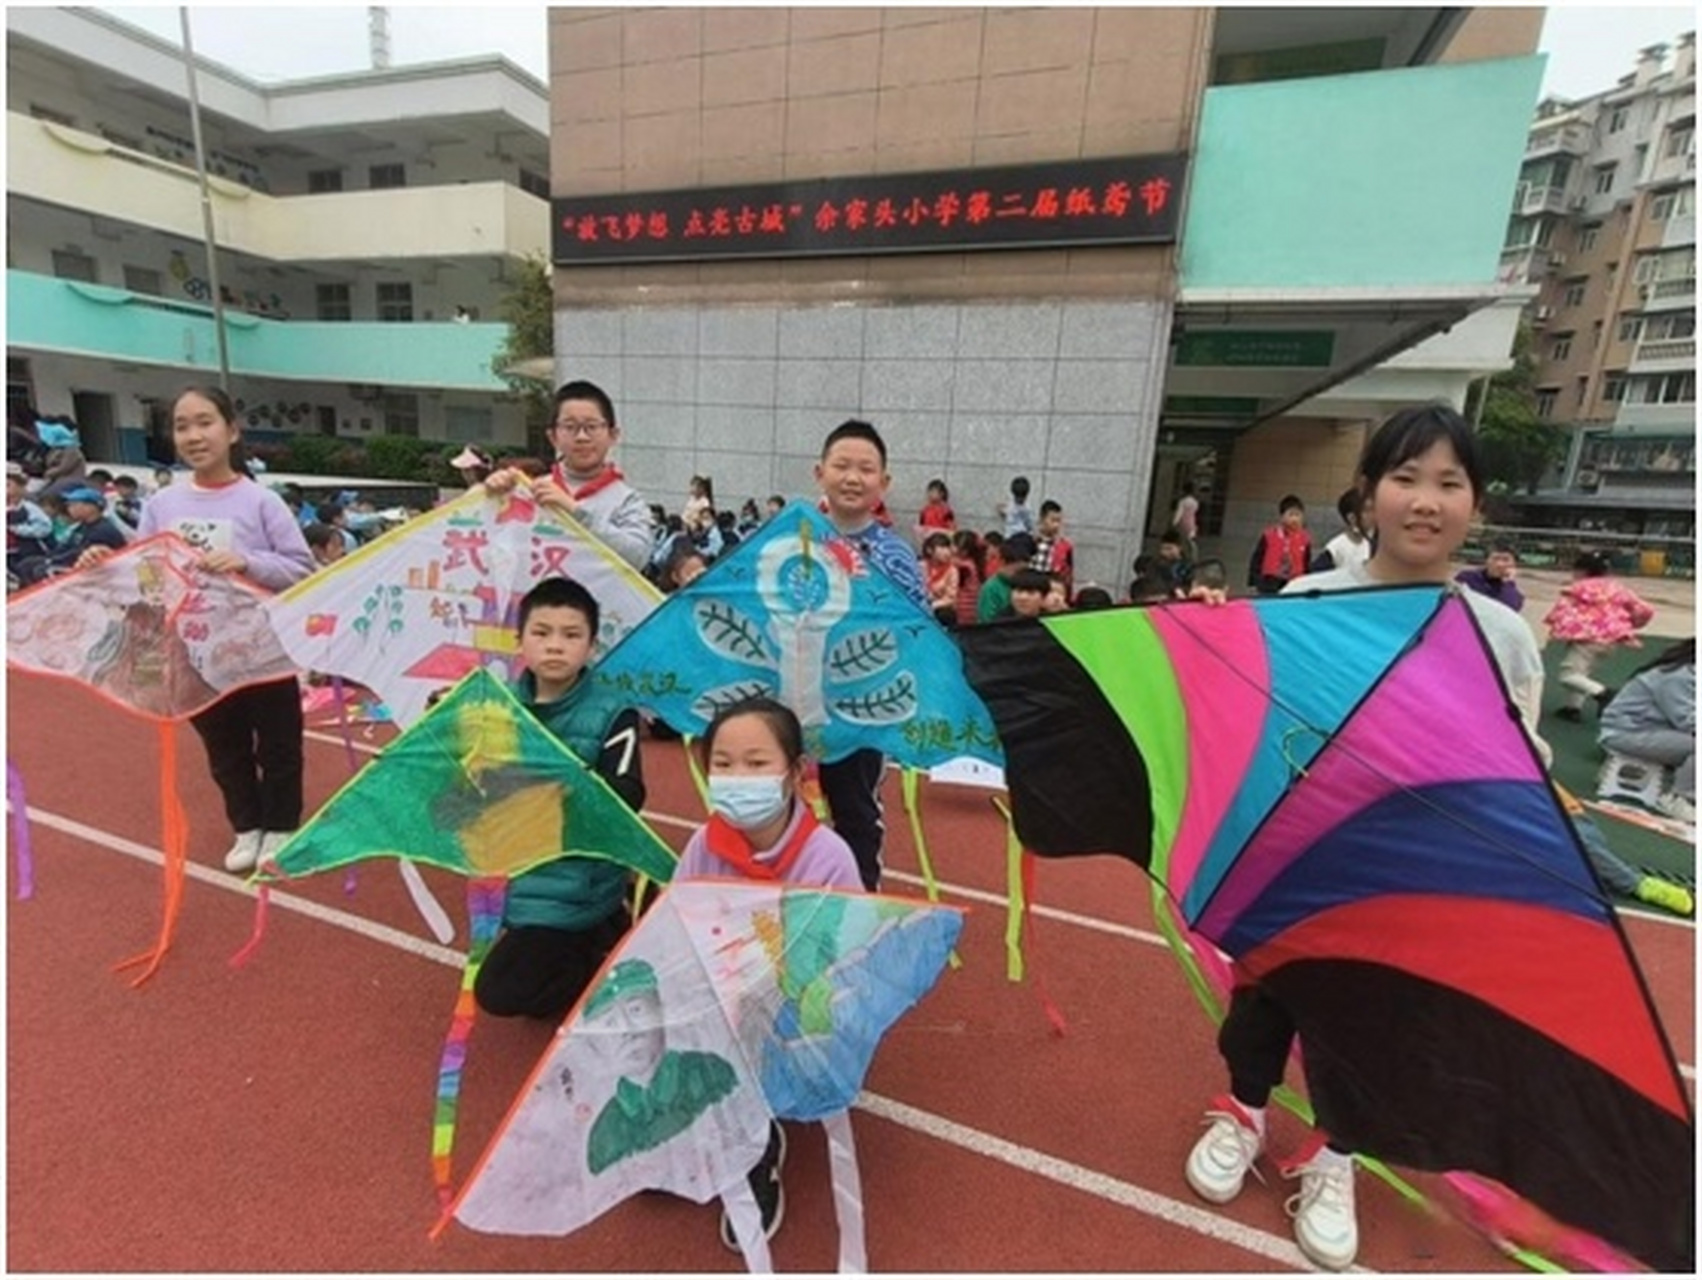 3月28日下午,武昌区余家头小学杨家路校区校园的运动场上空布满了画着